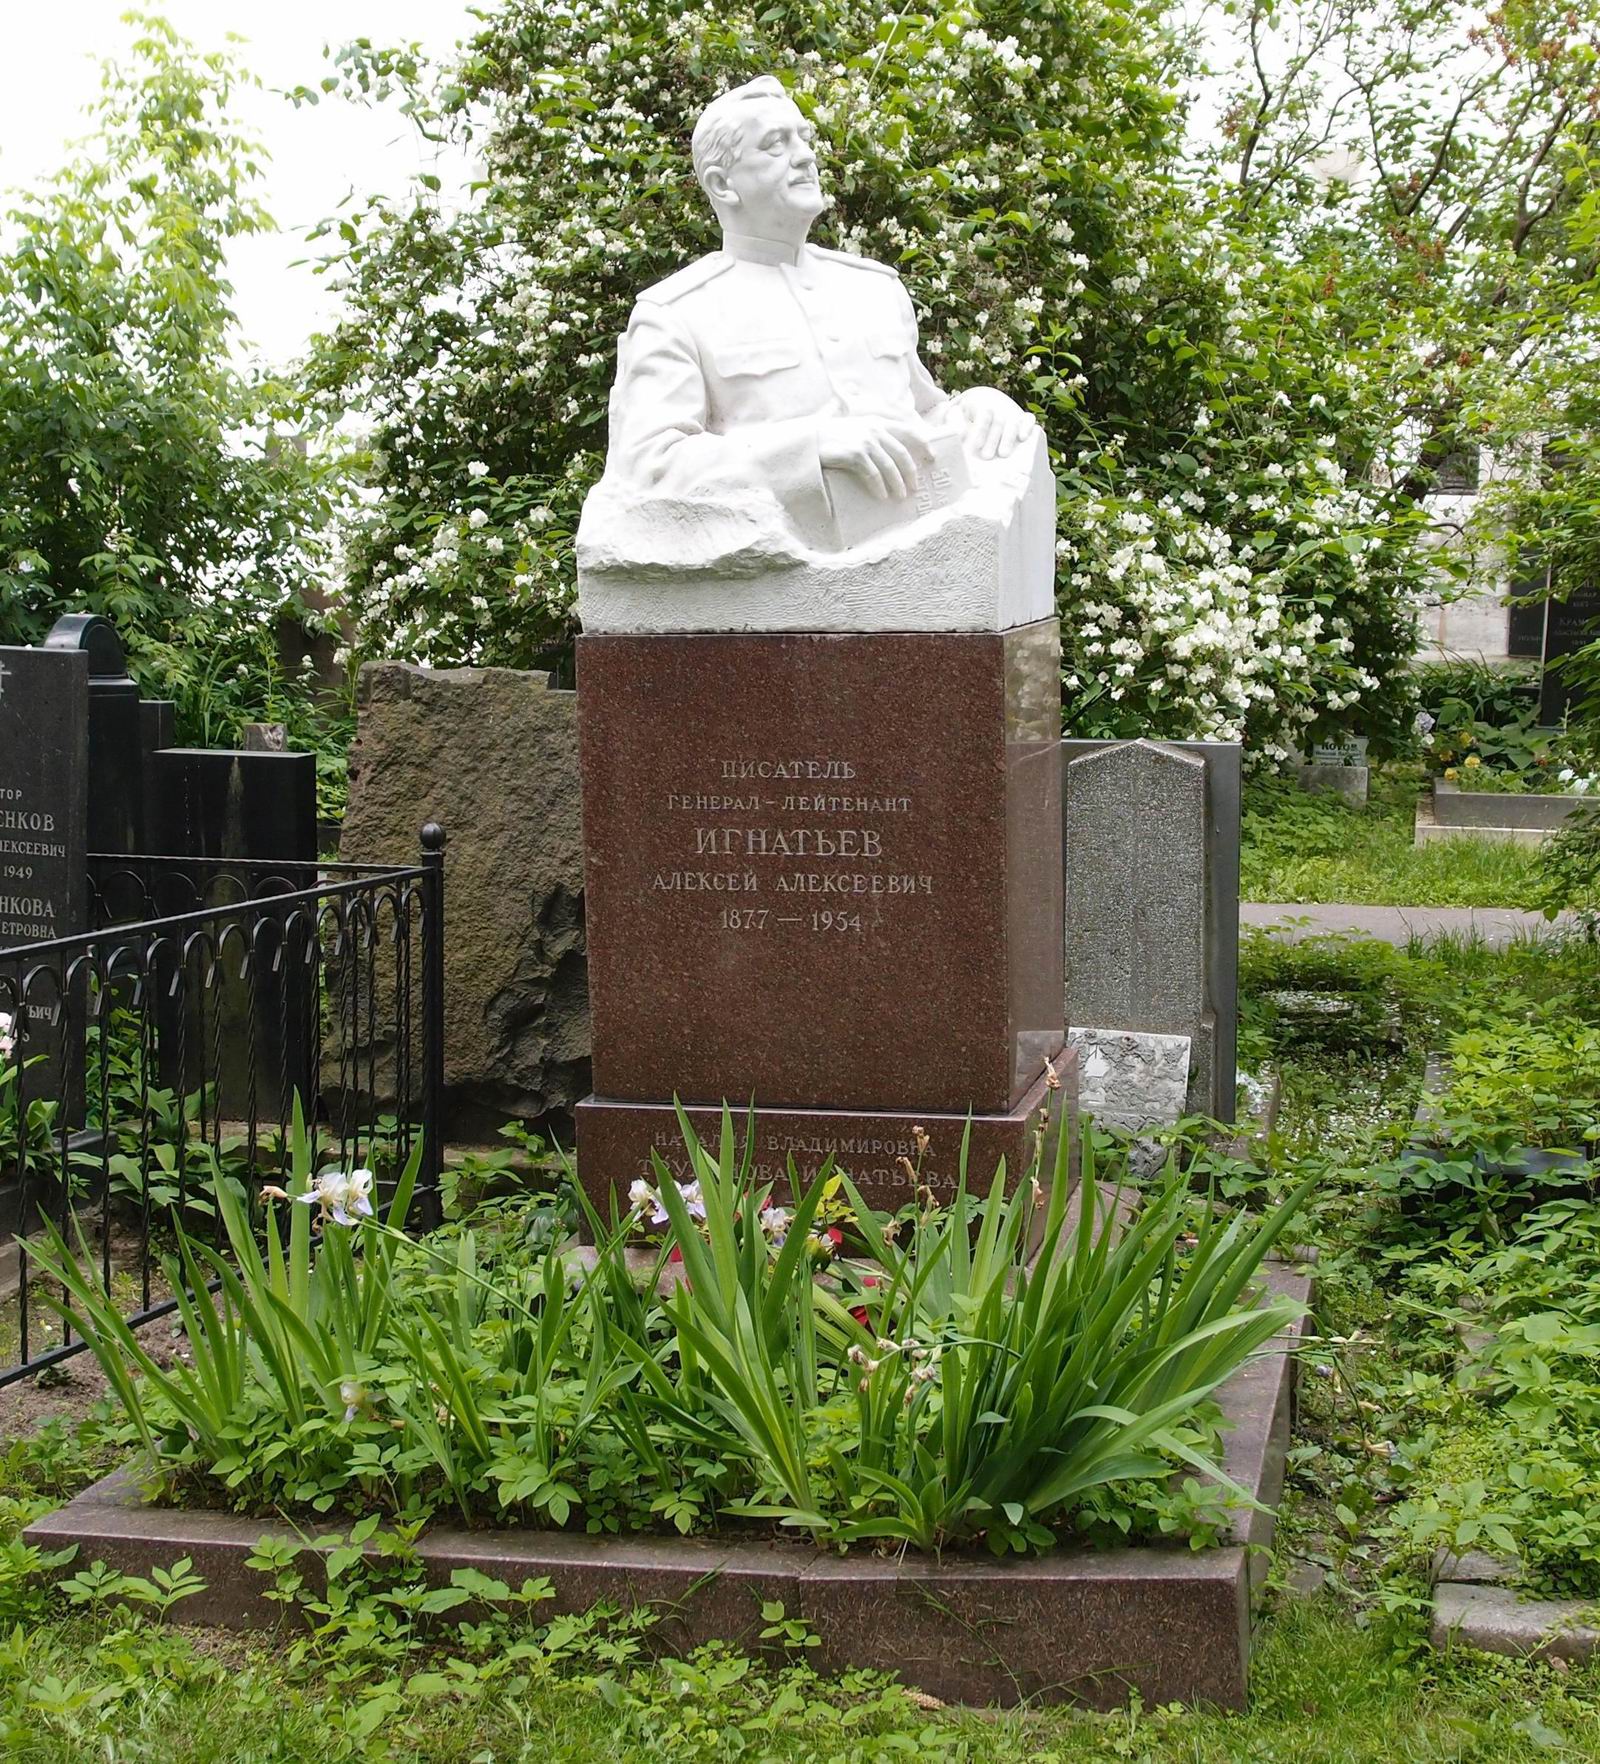 Памятник на могиле Игнатьева А.А. (1877–1954), ск. А.Елецкий, арх. В.Васнецов, на Новодевичьем кладбище (3–63–46). Нажмите левую кнопку мыши чтобы увидеть фрагмент памятника.